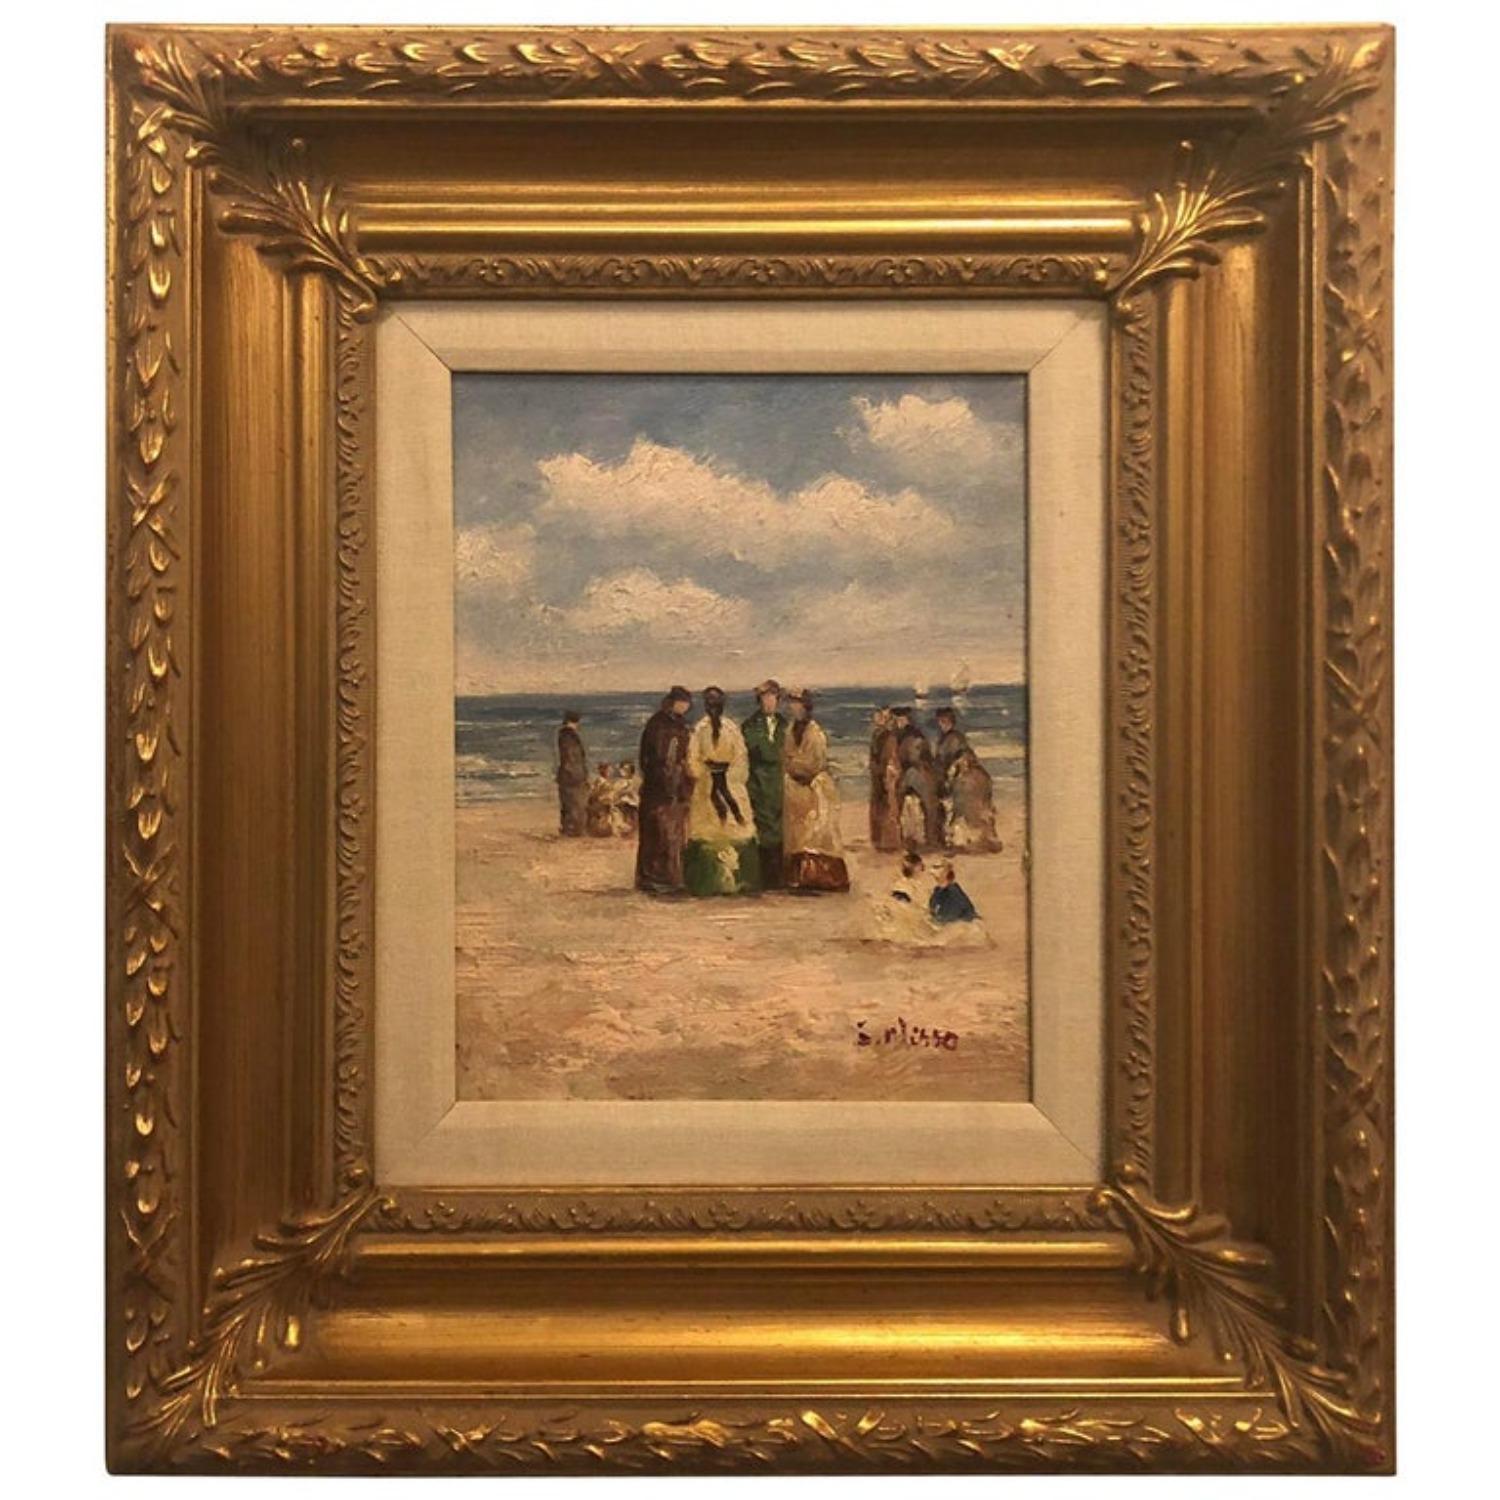 Peinture impressionniste de plage à l'huile sur toile des années 1980, encadrée et signée